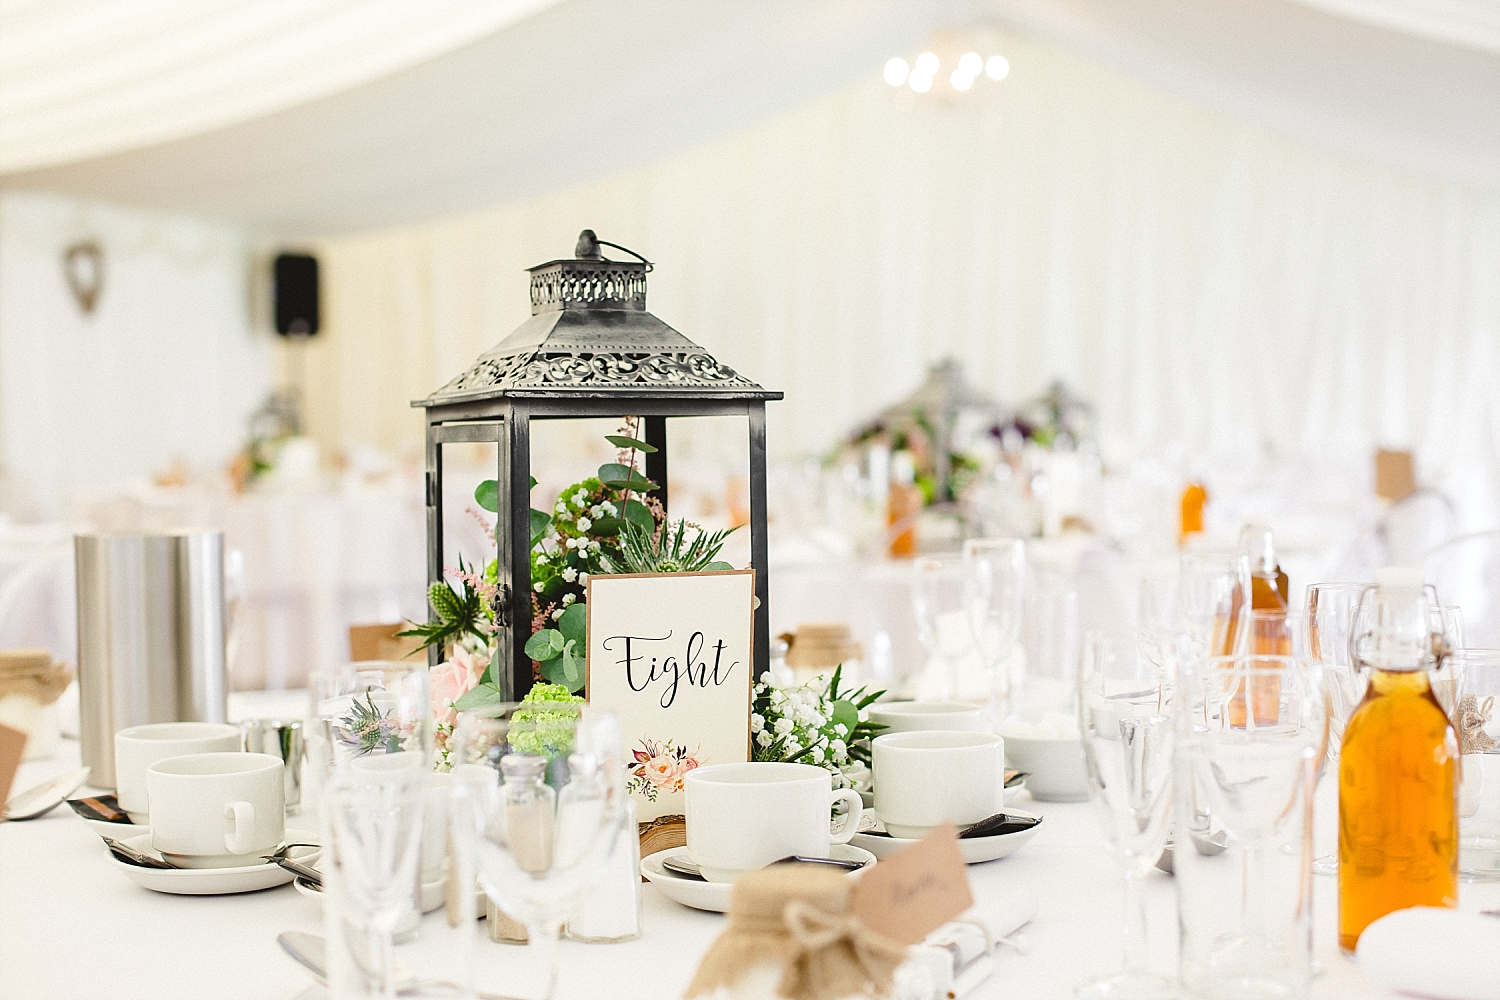 Moor Hall Wedding Venue - Table Details